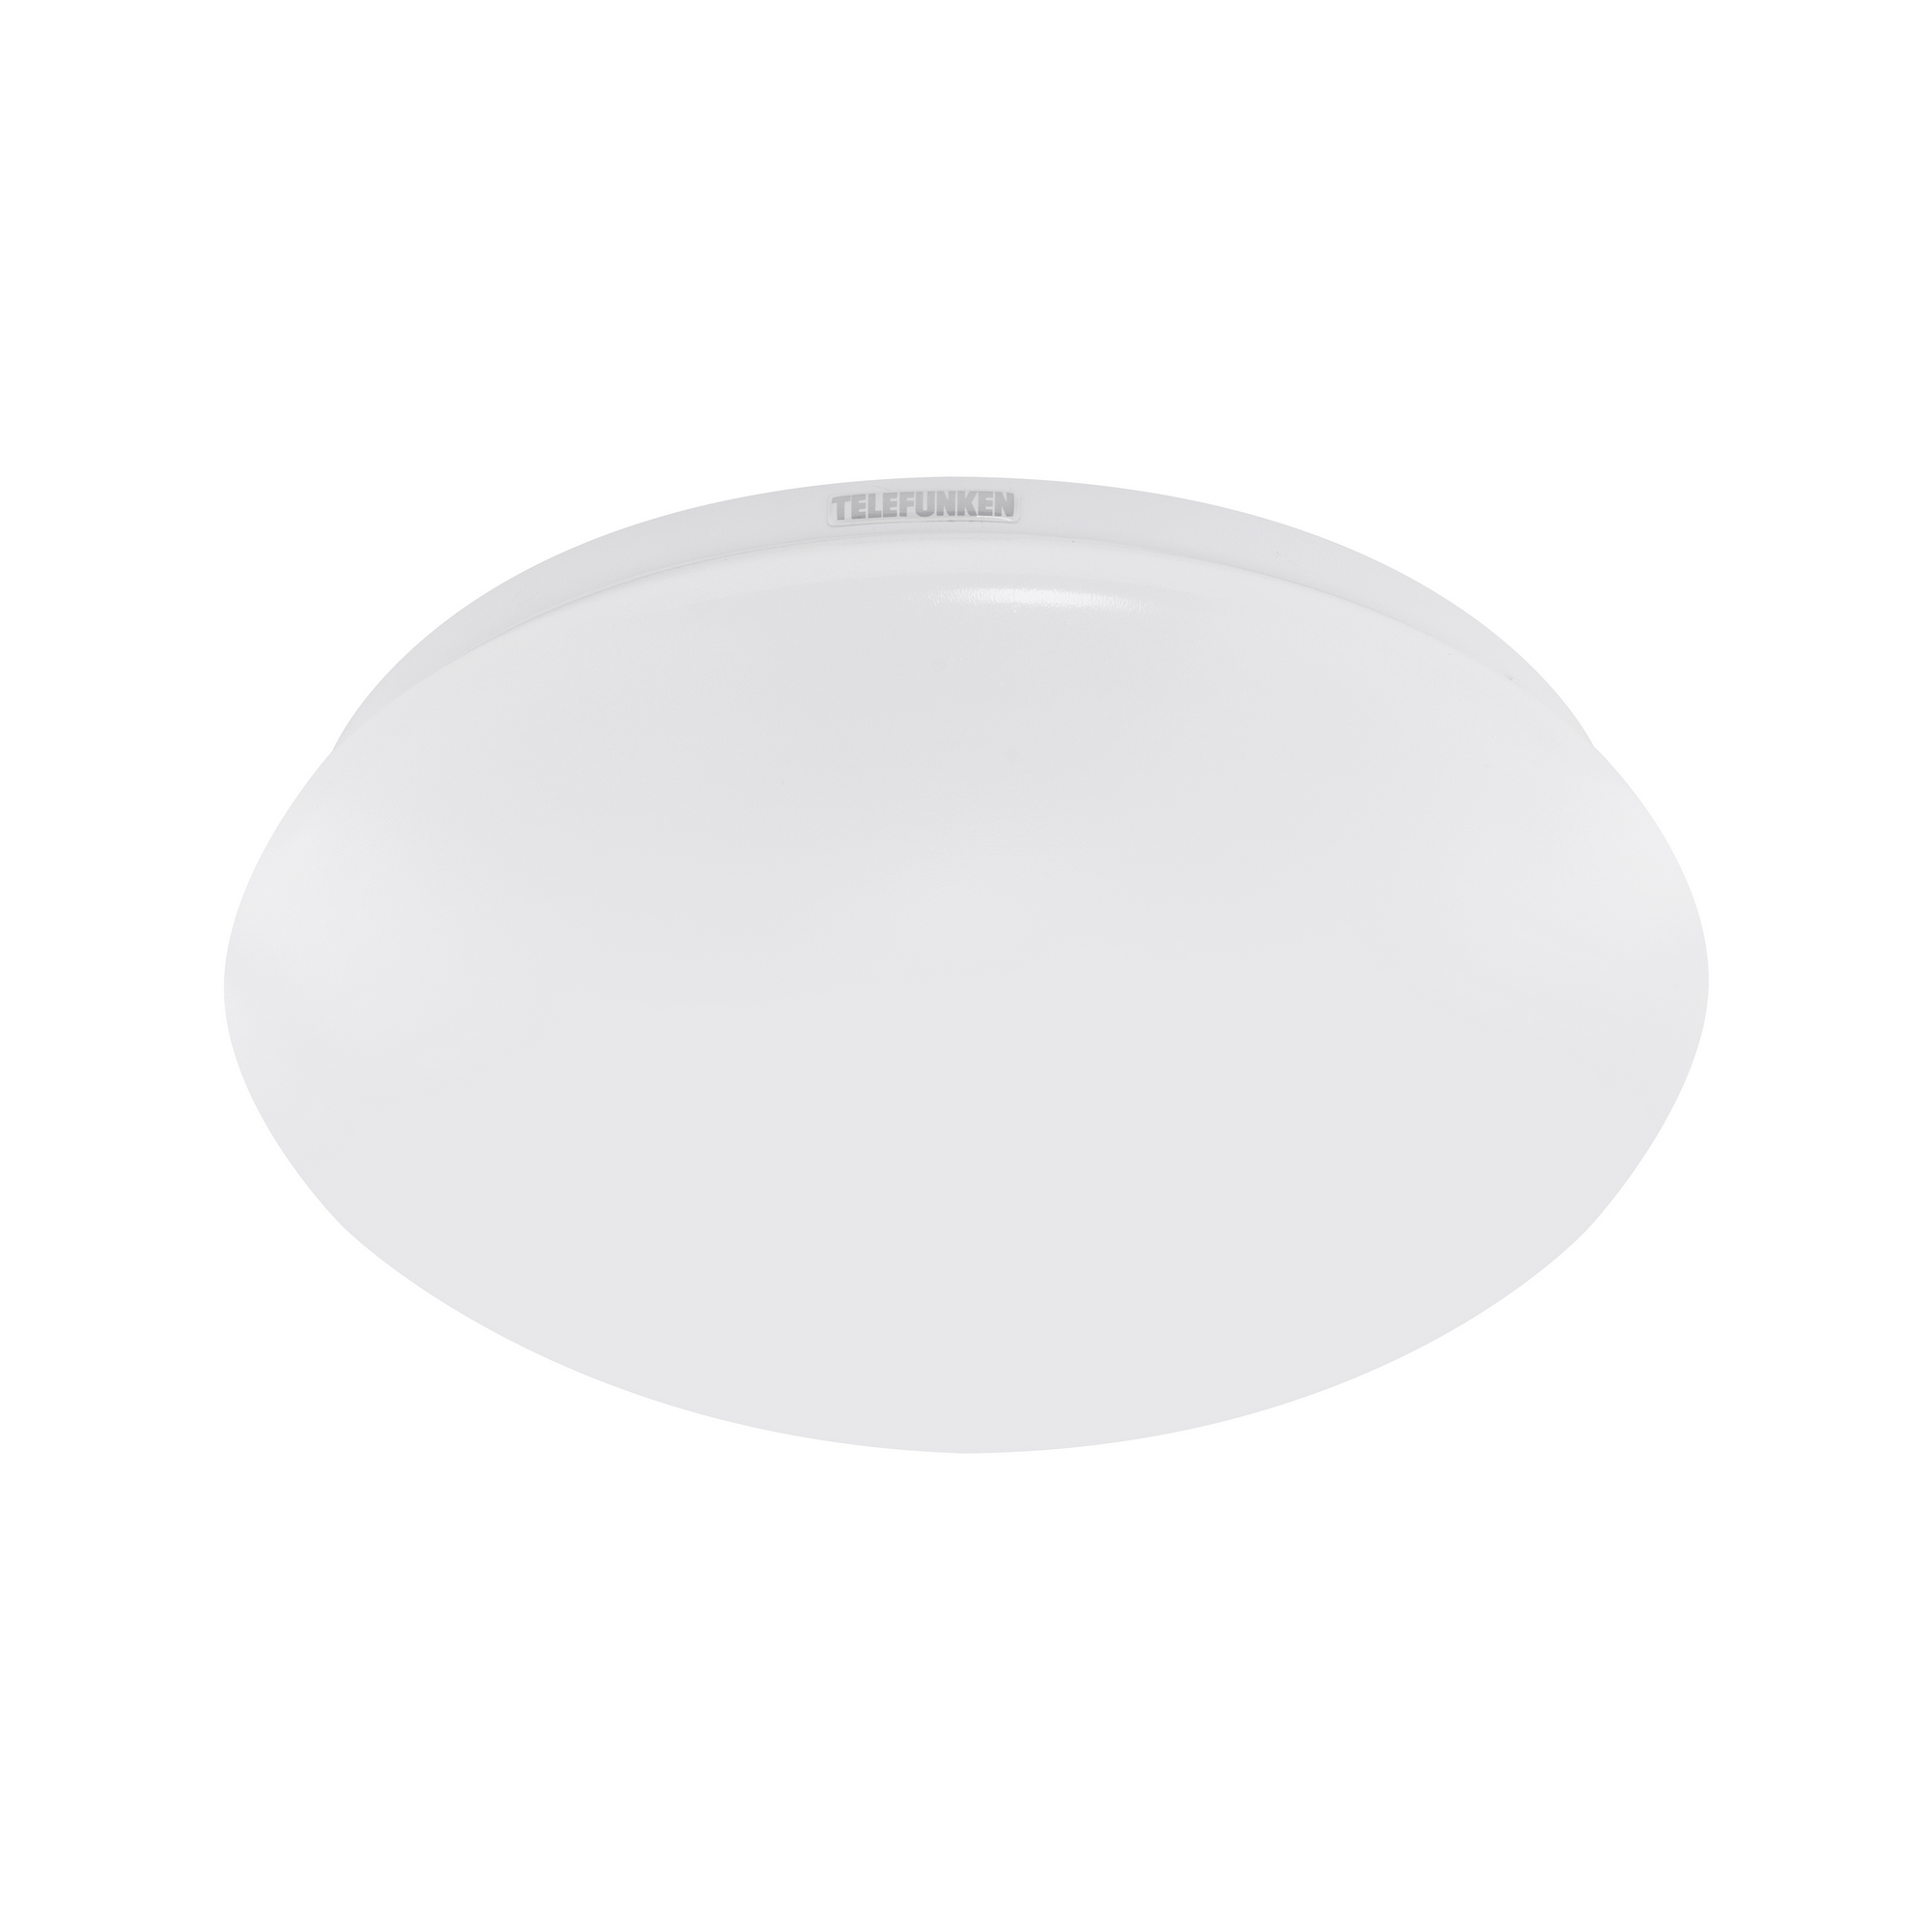 Sensor-LED-Deckenleuchte 'Apollon' weiß 1500 lm, Ø 27,8 cm + product picture